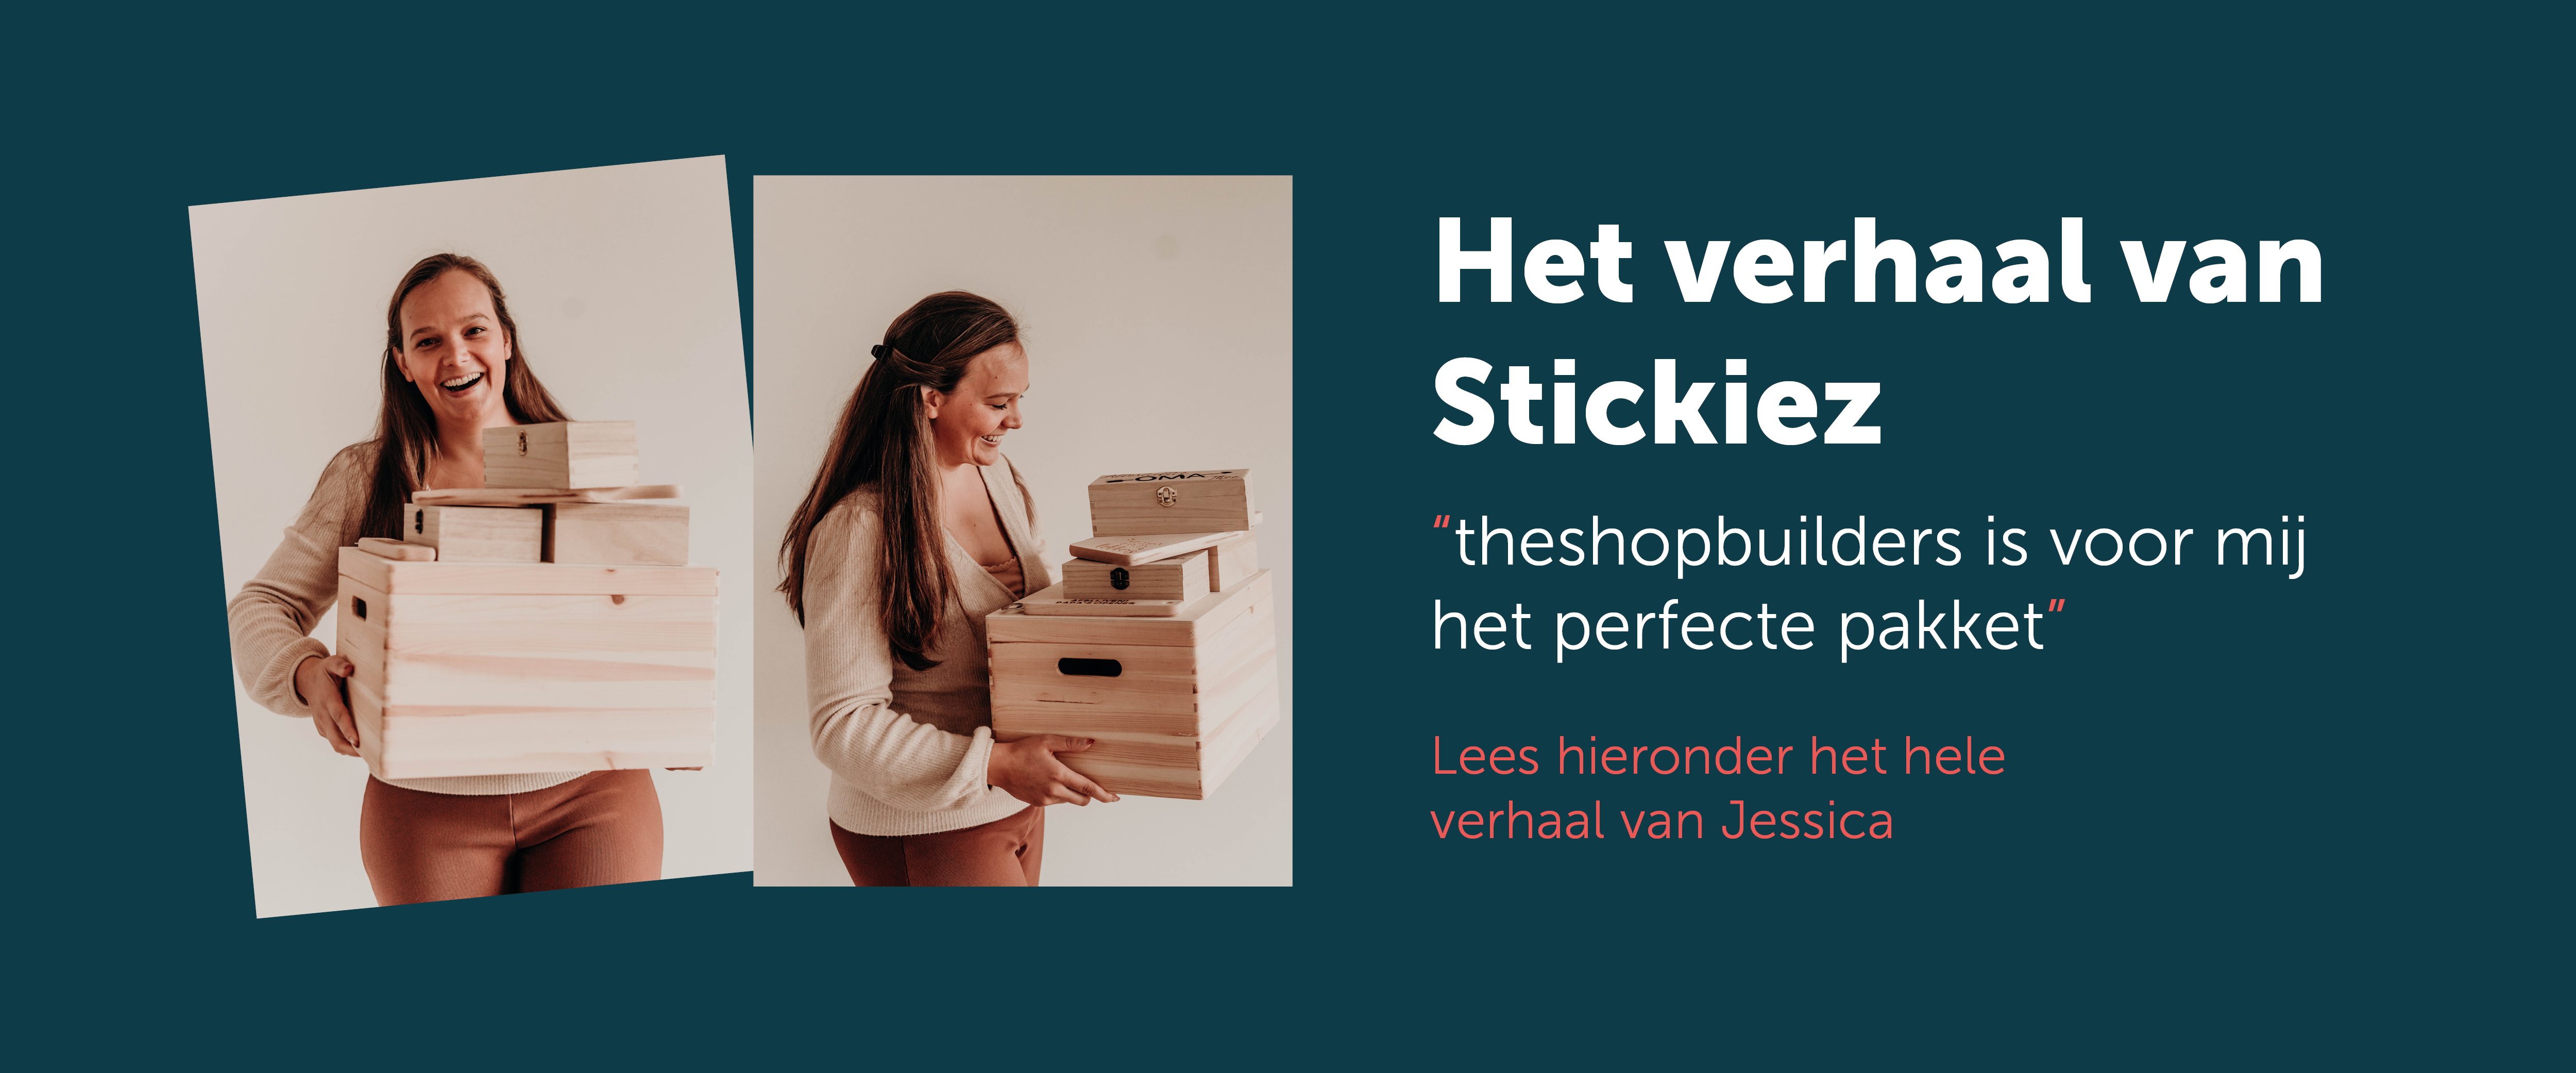 Jessica Van Stickiez